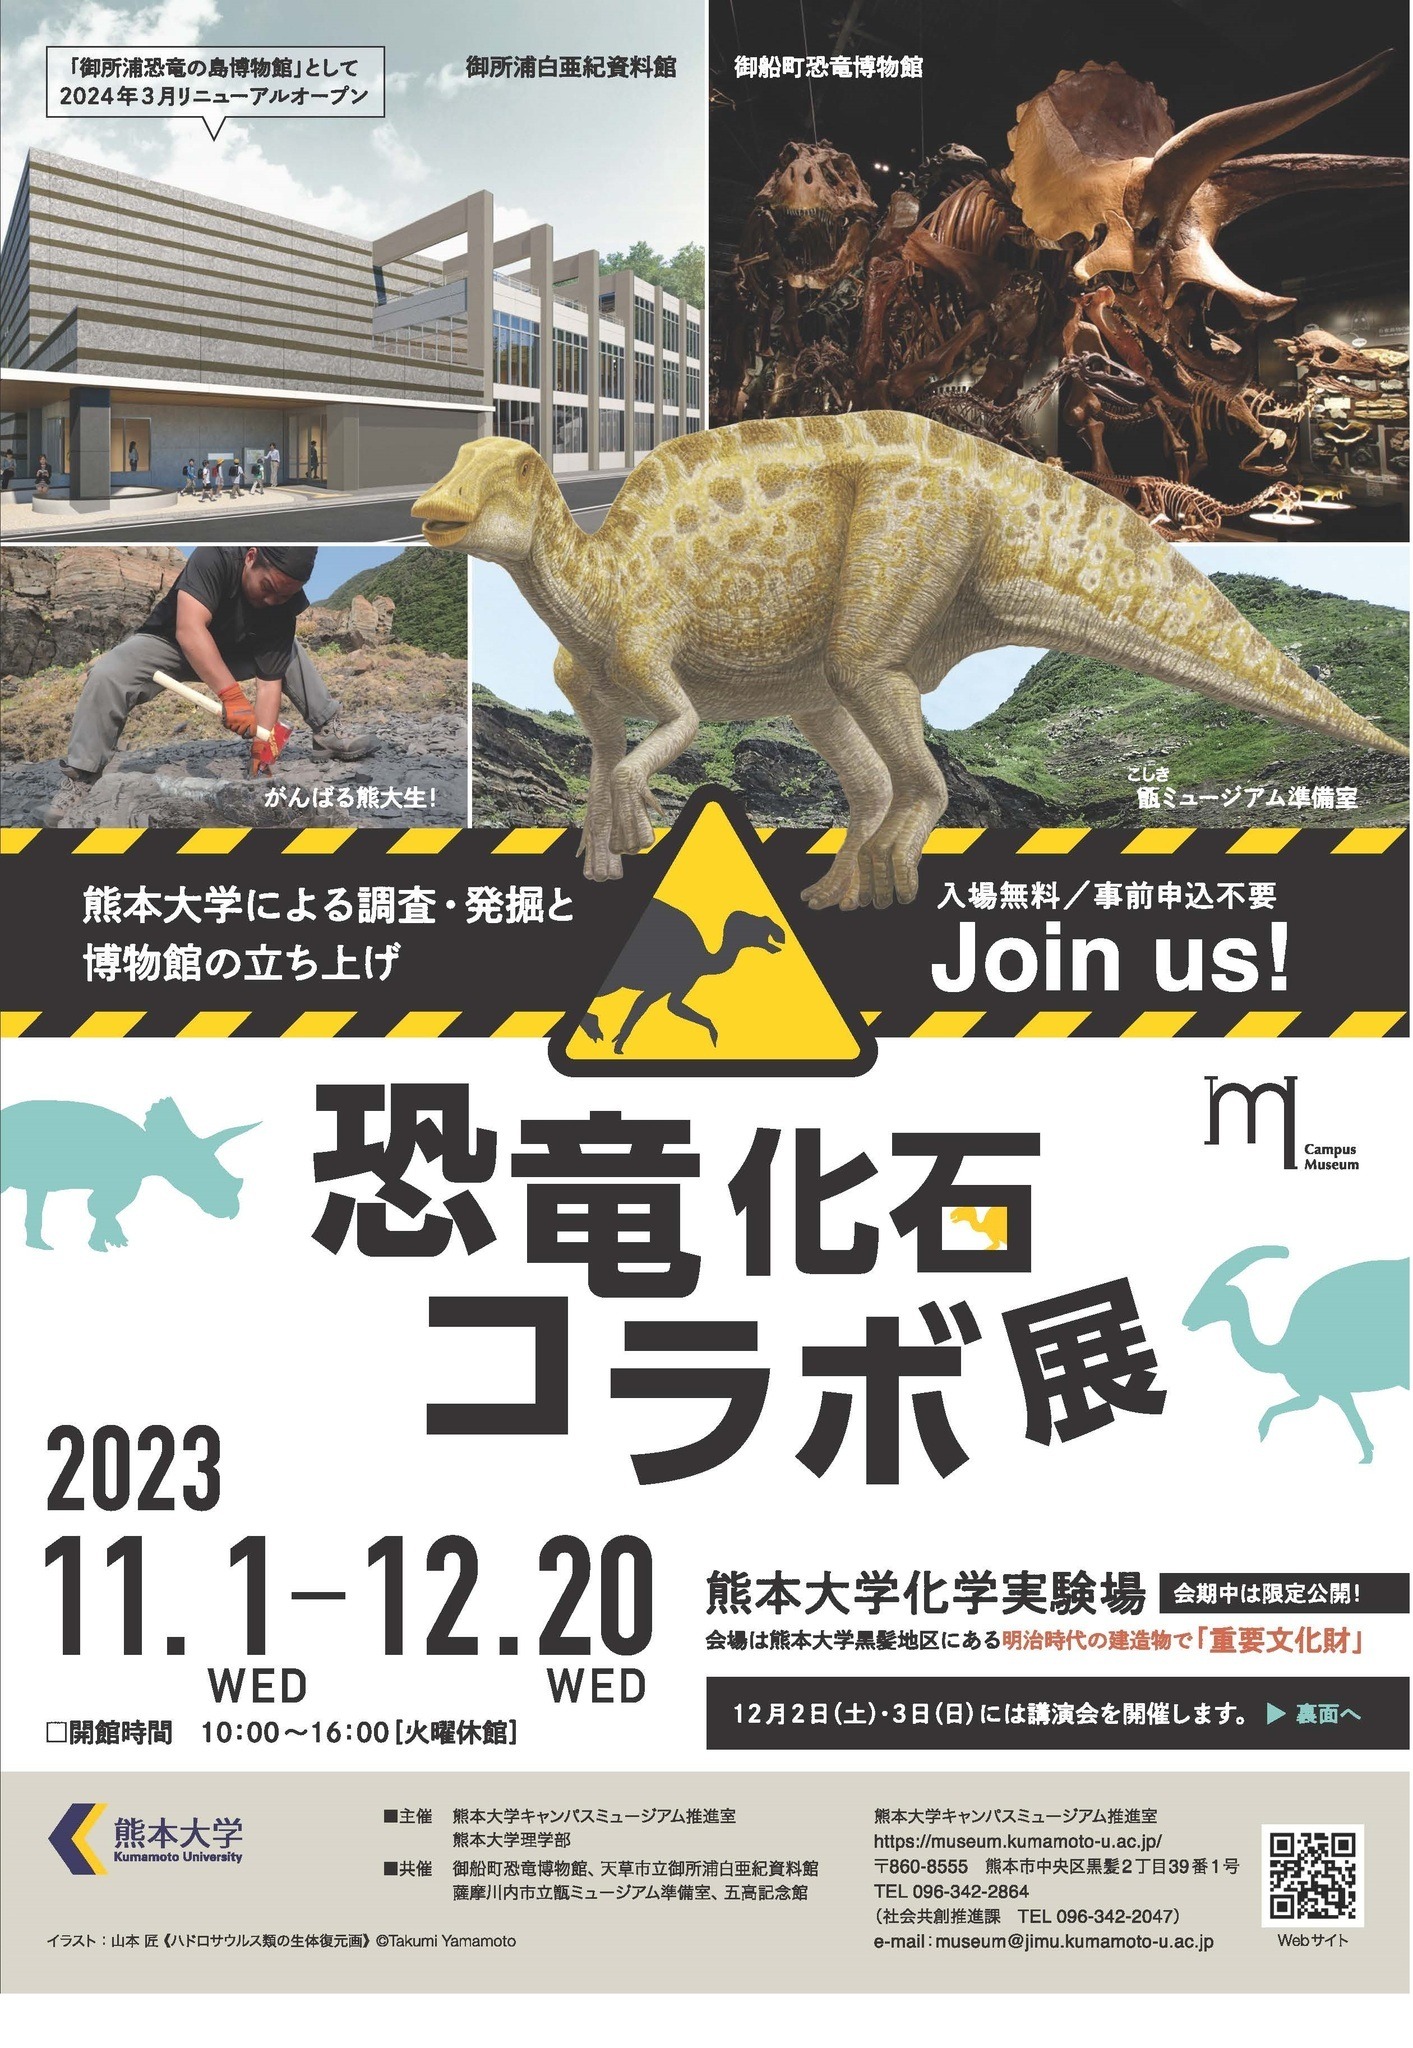 熊本大「恐竜化石コラボ展」入場無料、12/20まで | リセマム